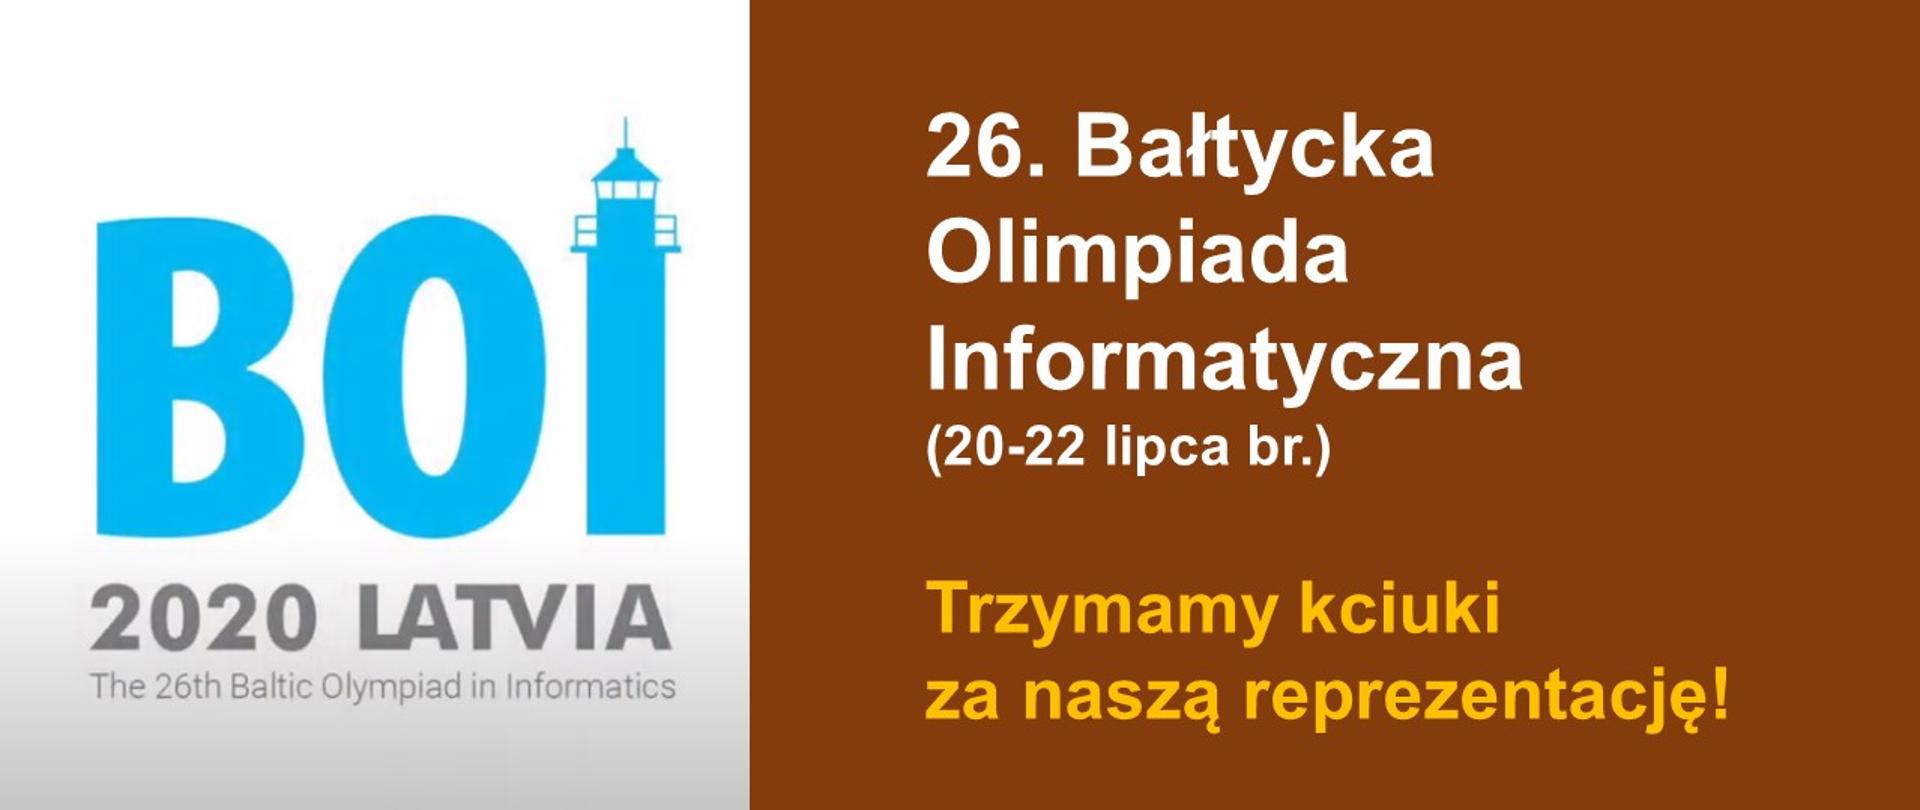 Grafika informująca o 26. Bałtyckiej Olimpiadzie Informatycznej